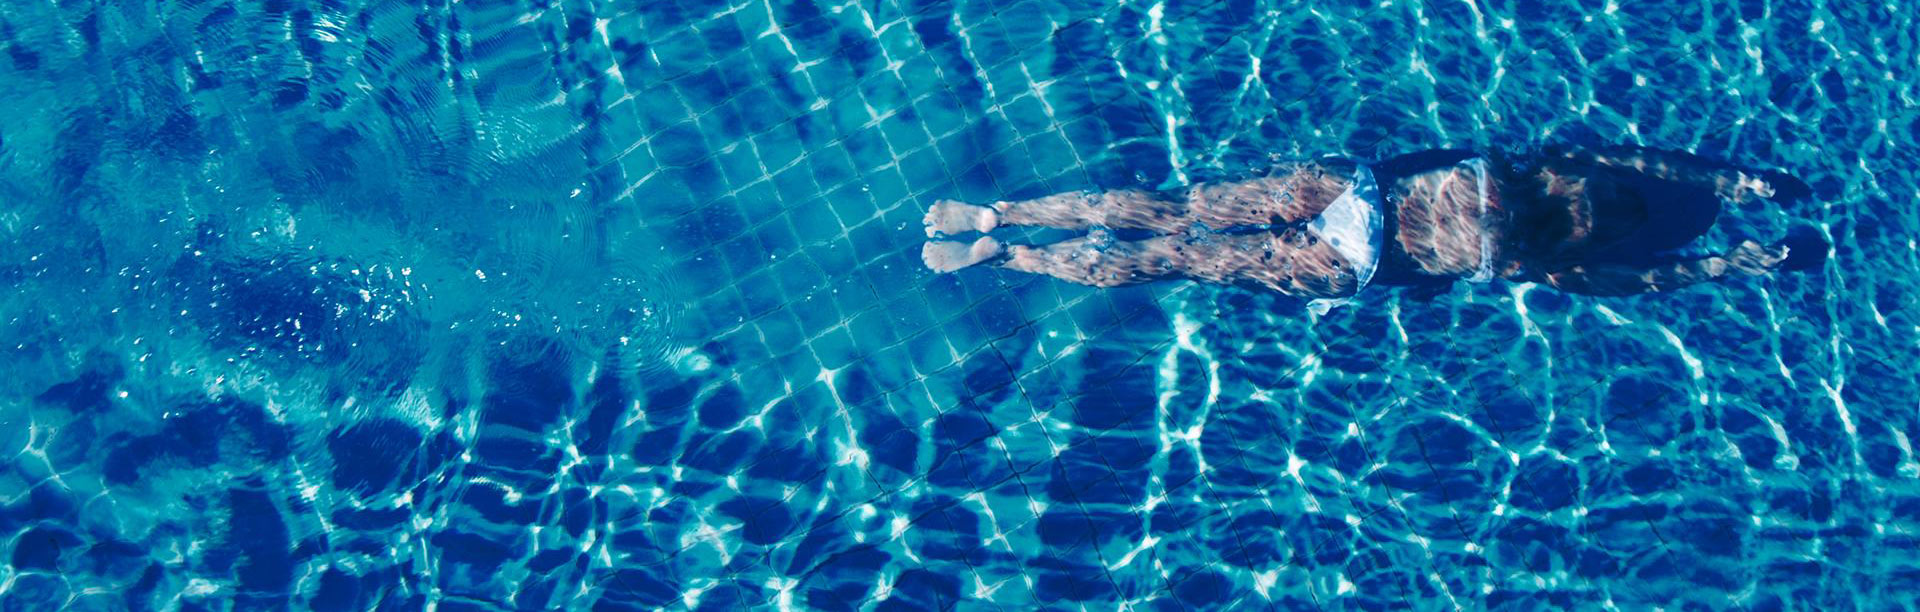 zwembad-dame-waterbehandeling